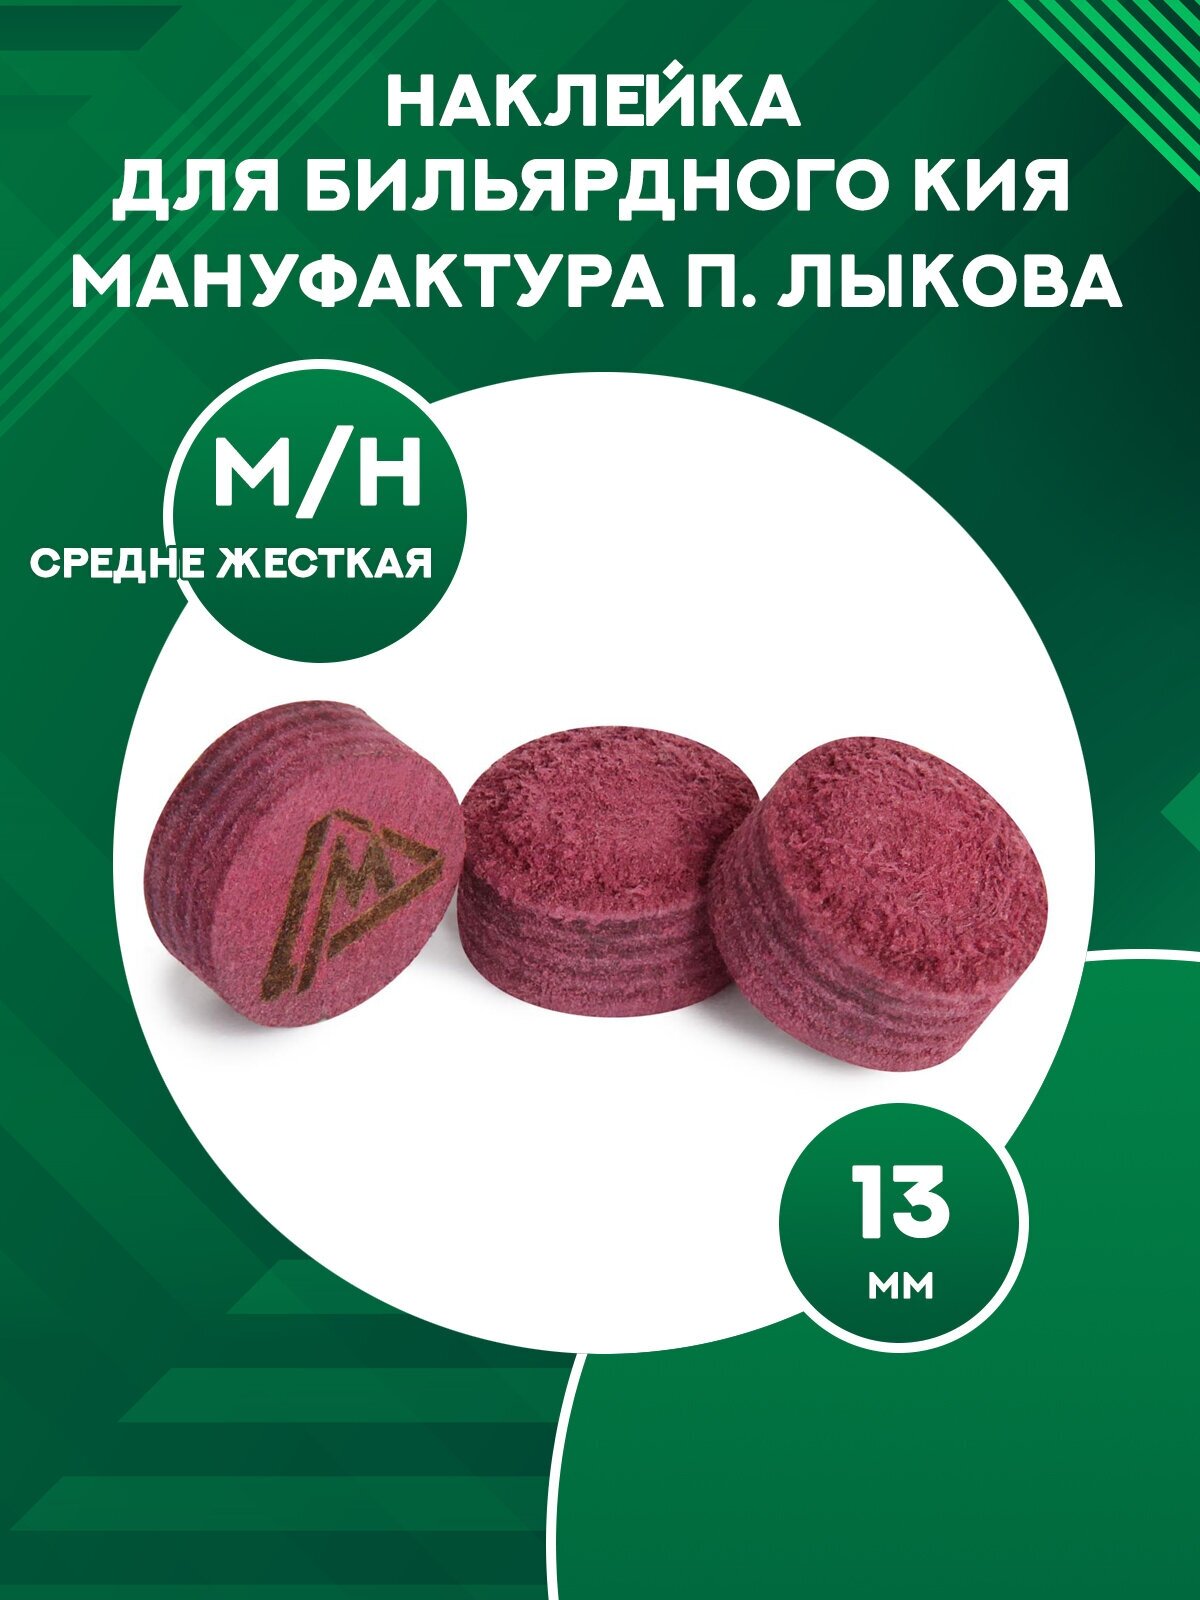 Наклейка для бильярдного кия Мануфактура П. Лыкова, диаметр 13 мм, MEDIUM/HARD